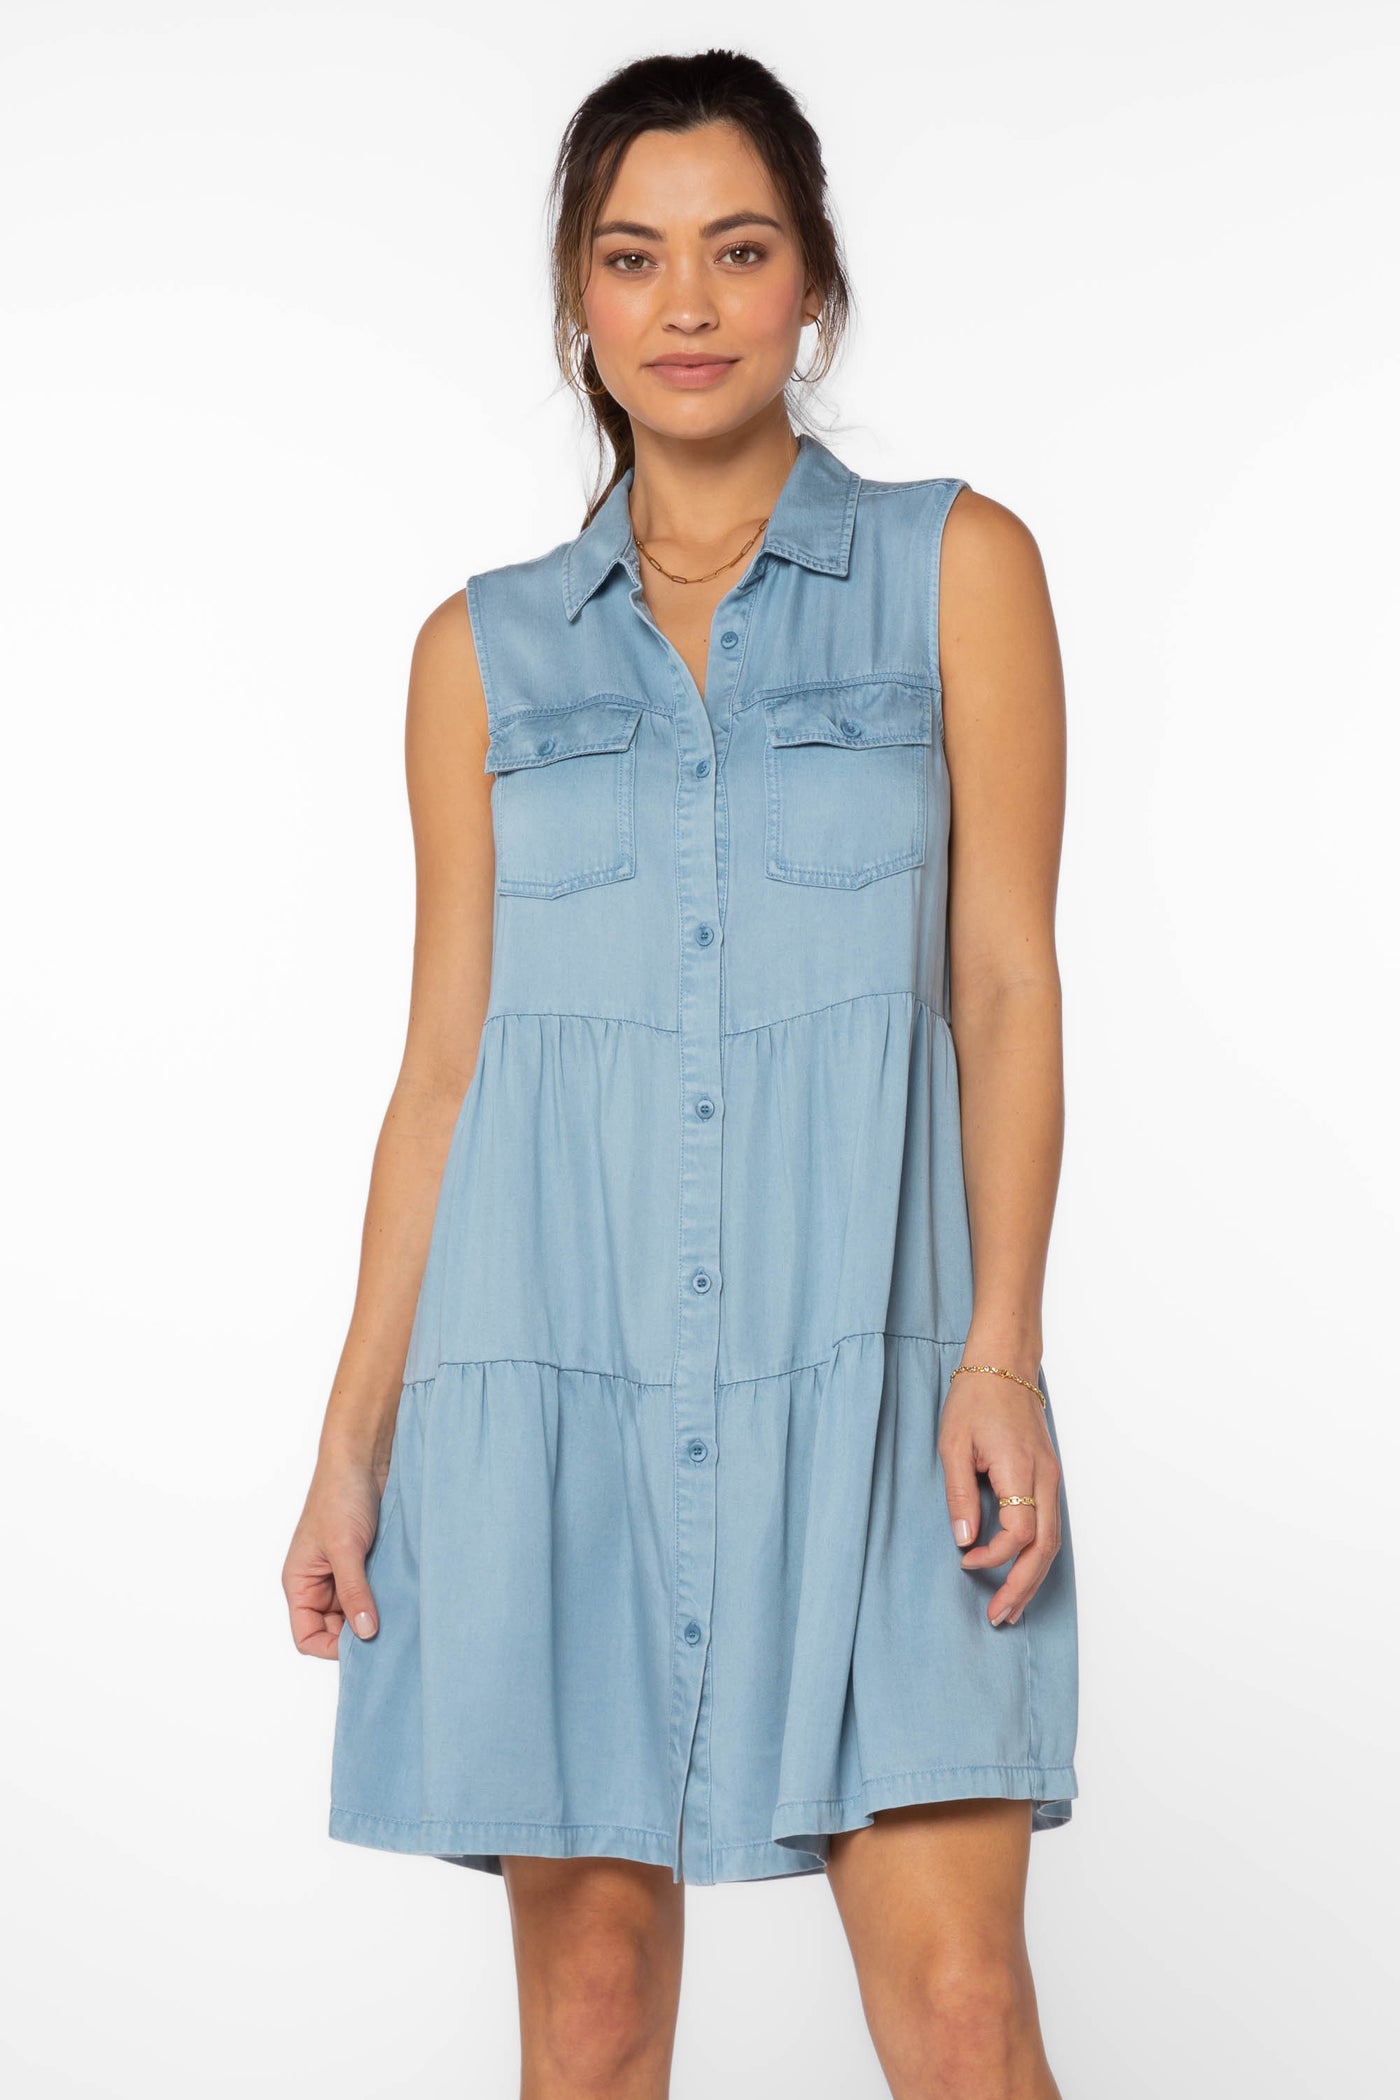 Collette Blue Denim Dress - Dresses - Velvet Heart Clothing